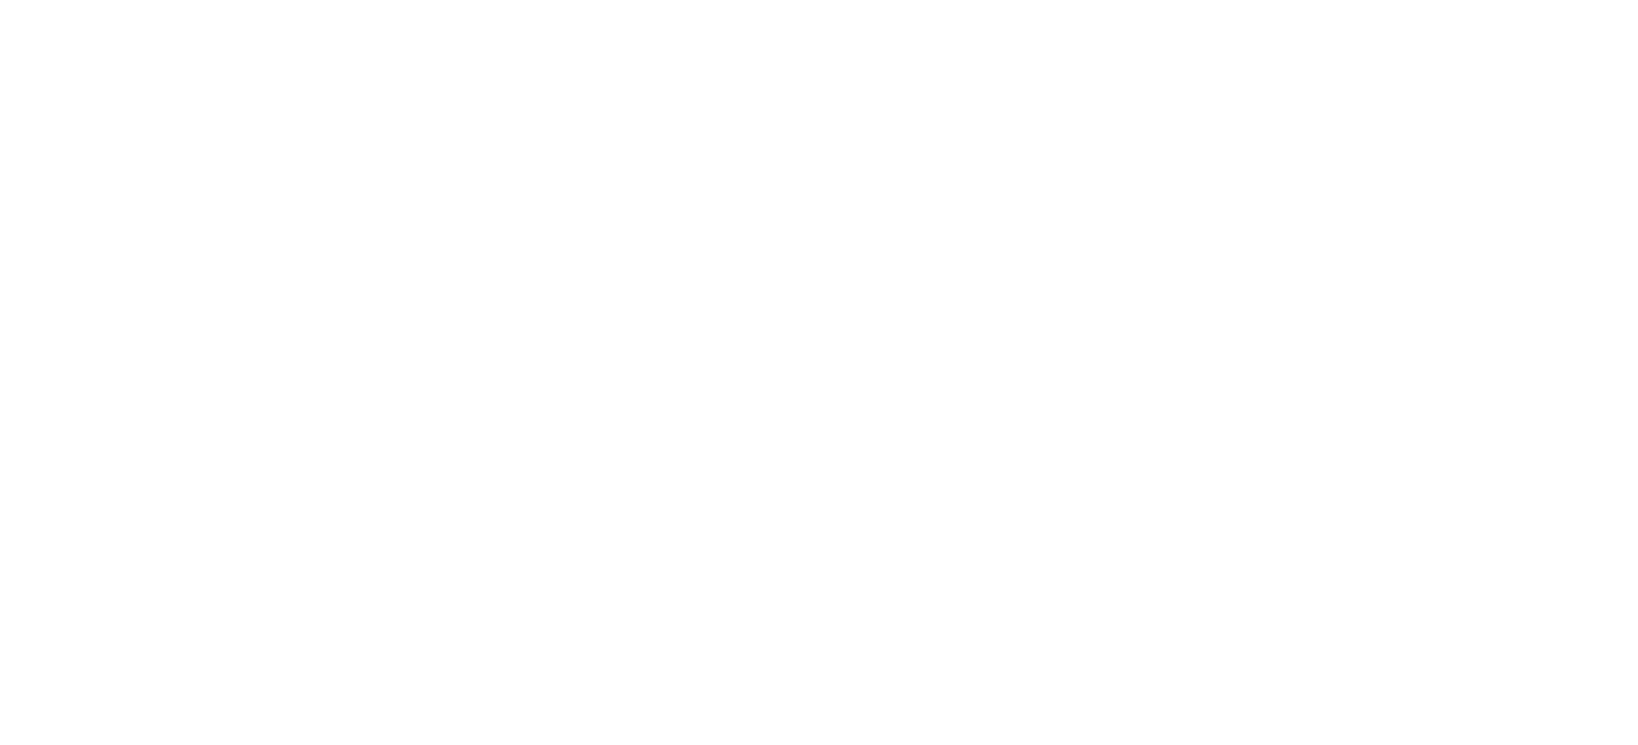 スコッツデールナショナルゴルフクラブとPXGのロゴ